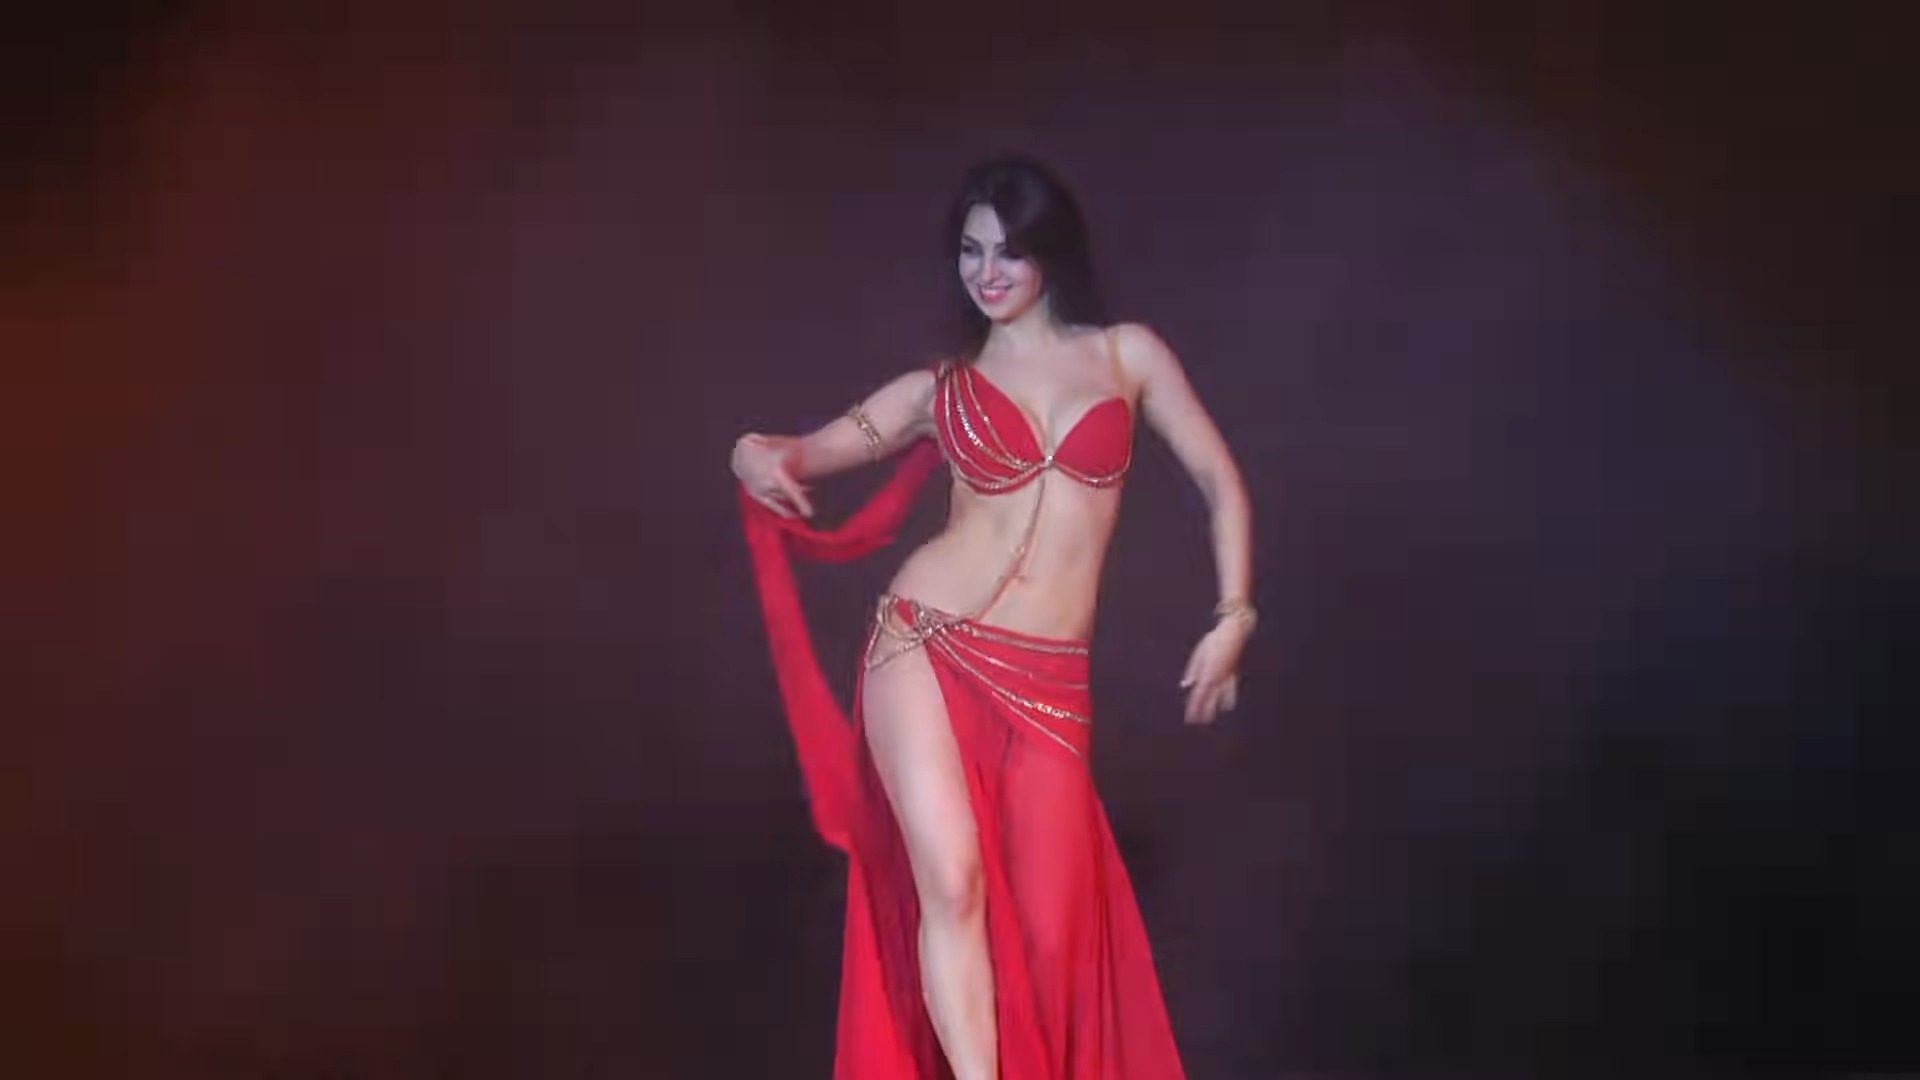 aaron goheen recommends belly dance erotica pic